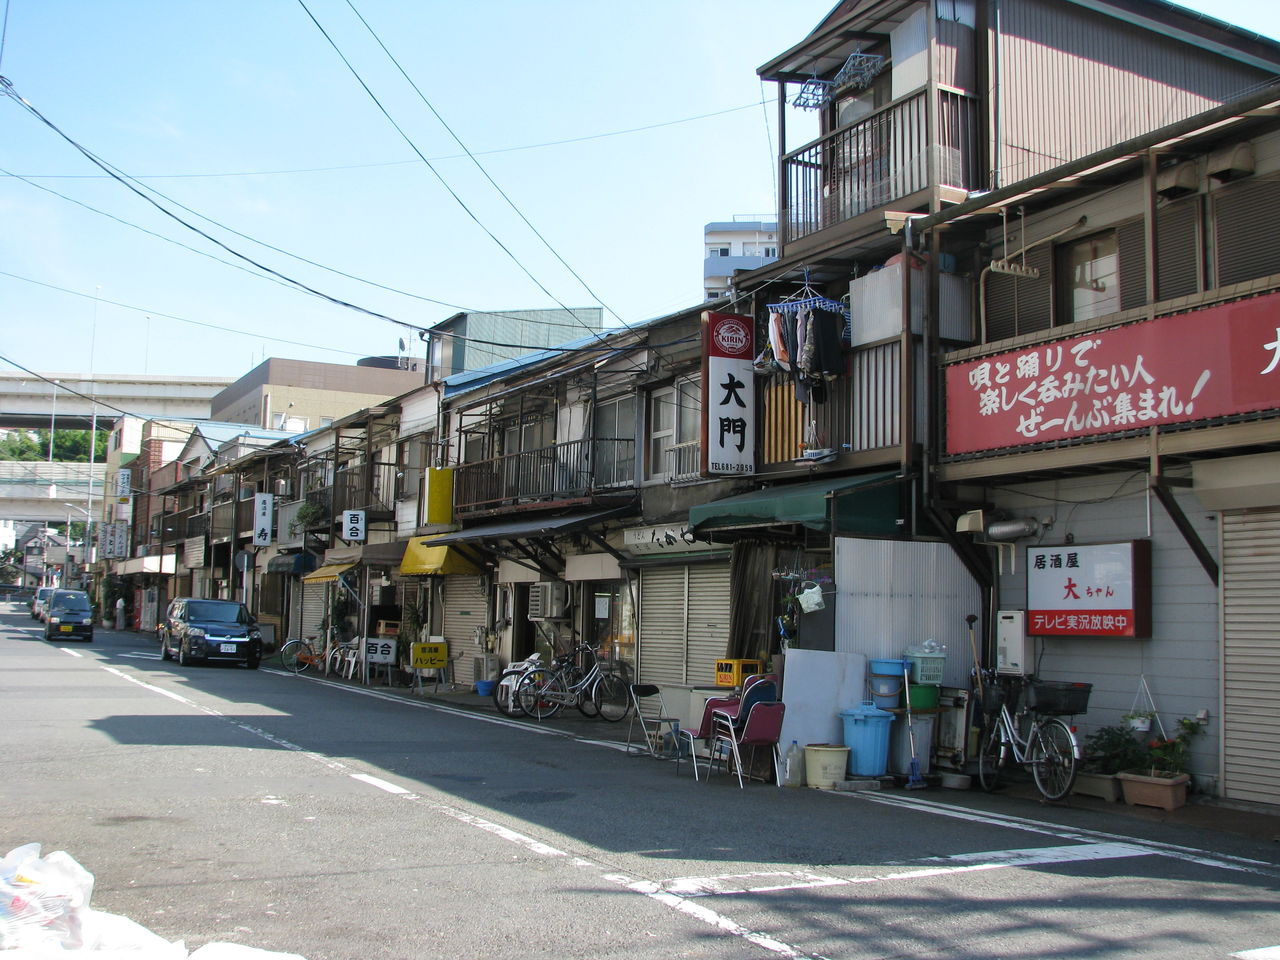 神奈川県横浜市 寿町のドヤ街 散歩と旅ときどき温泉